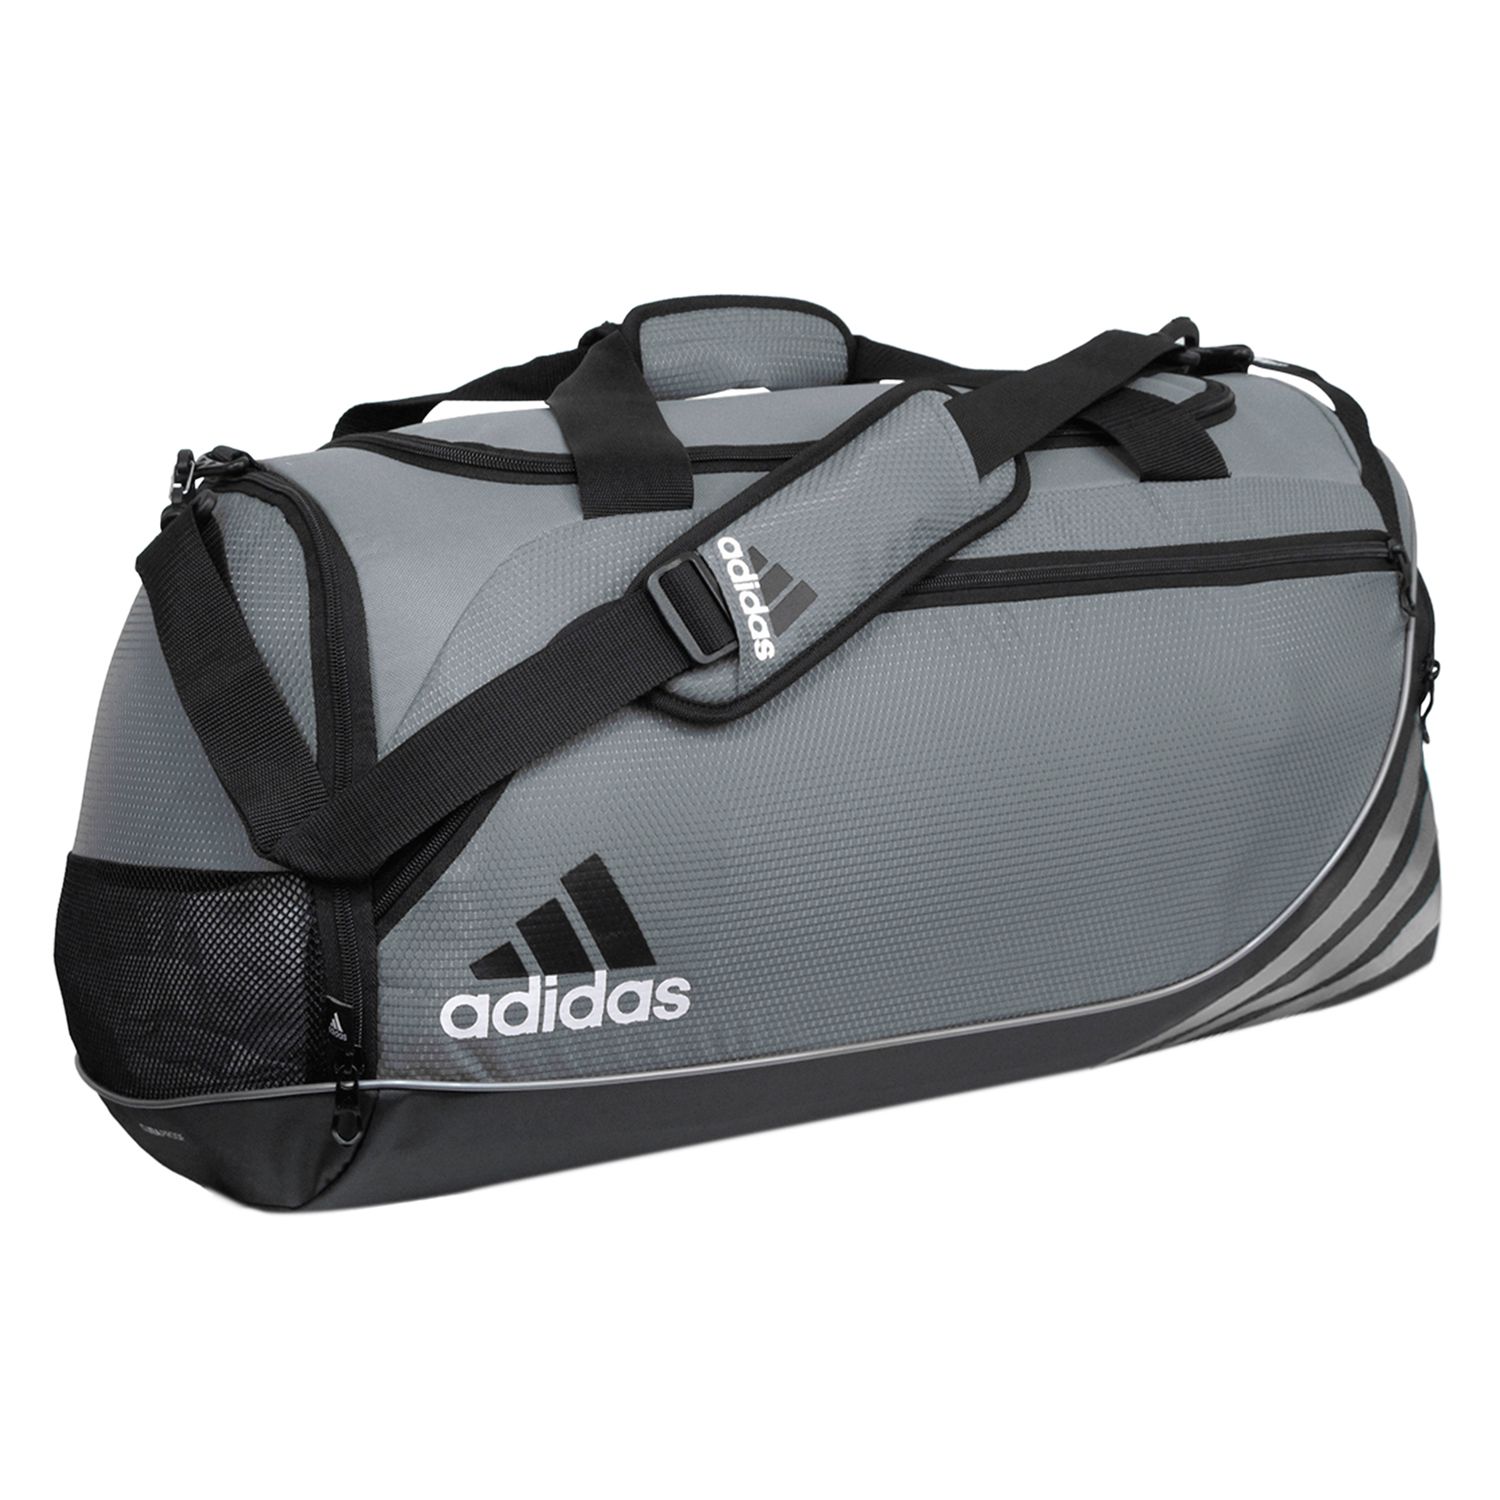 adidas speed duffel bag